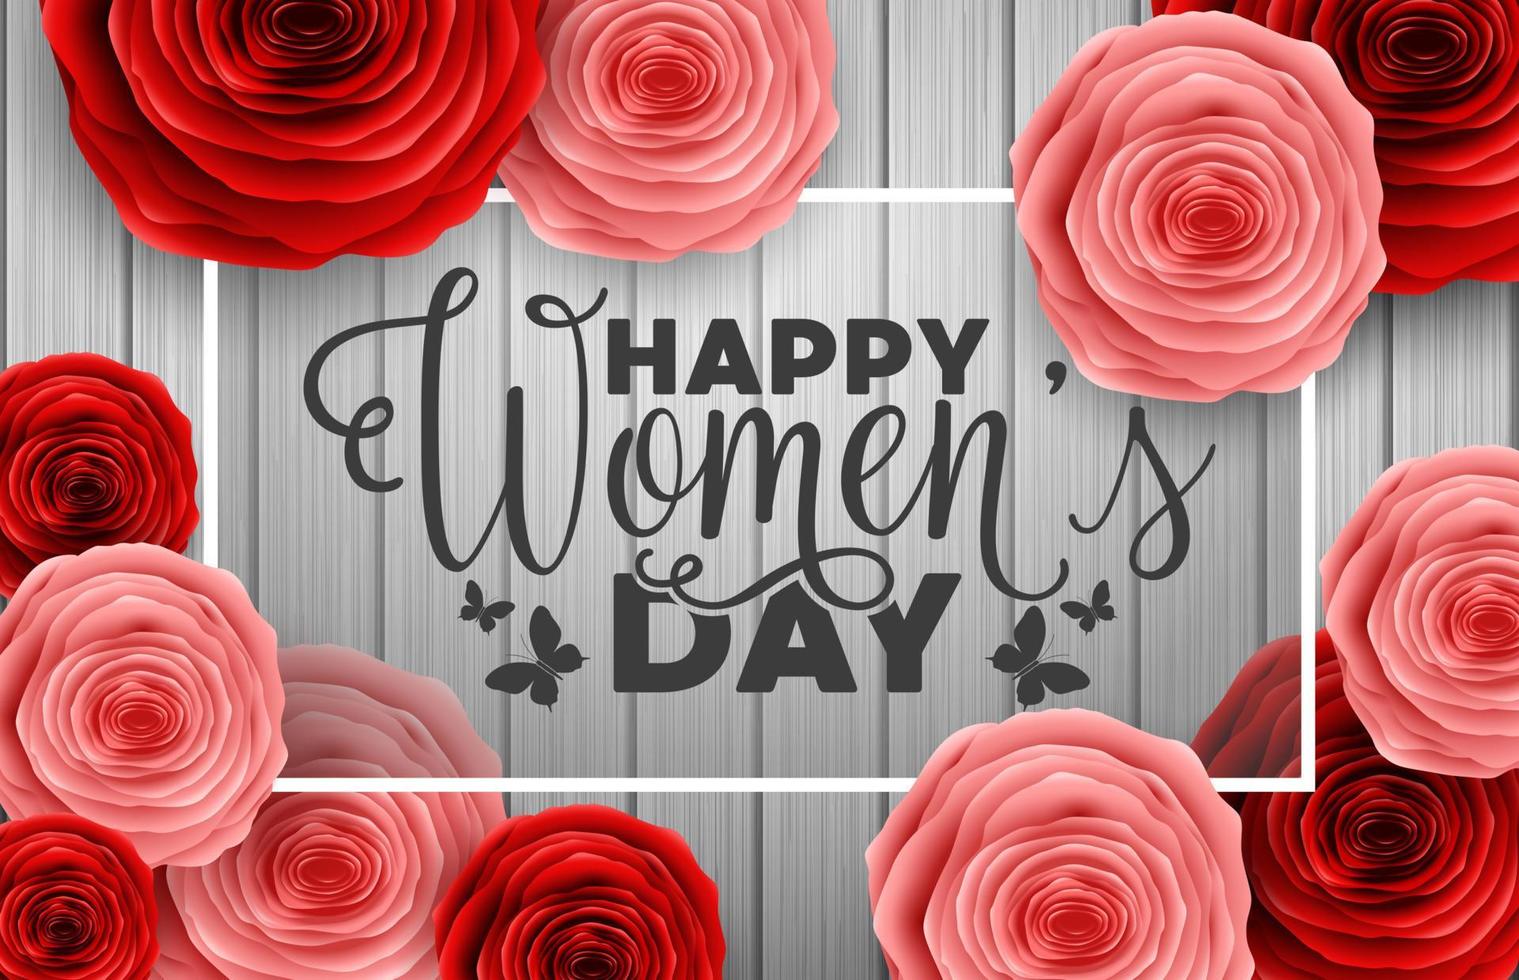 día internacional de la mujer feliz con mariposas de corte de papel, flores de rosas y letrero redondo negro sobre fondo de madera vector